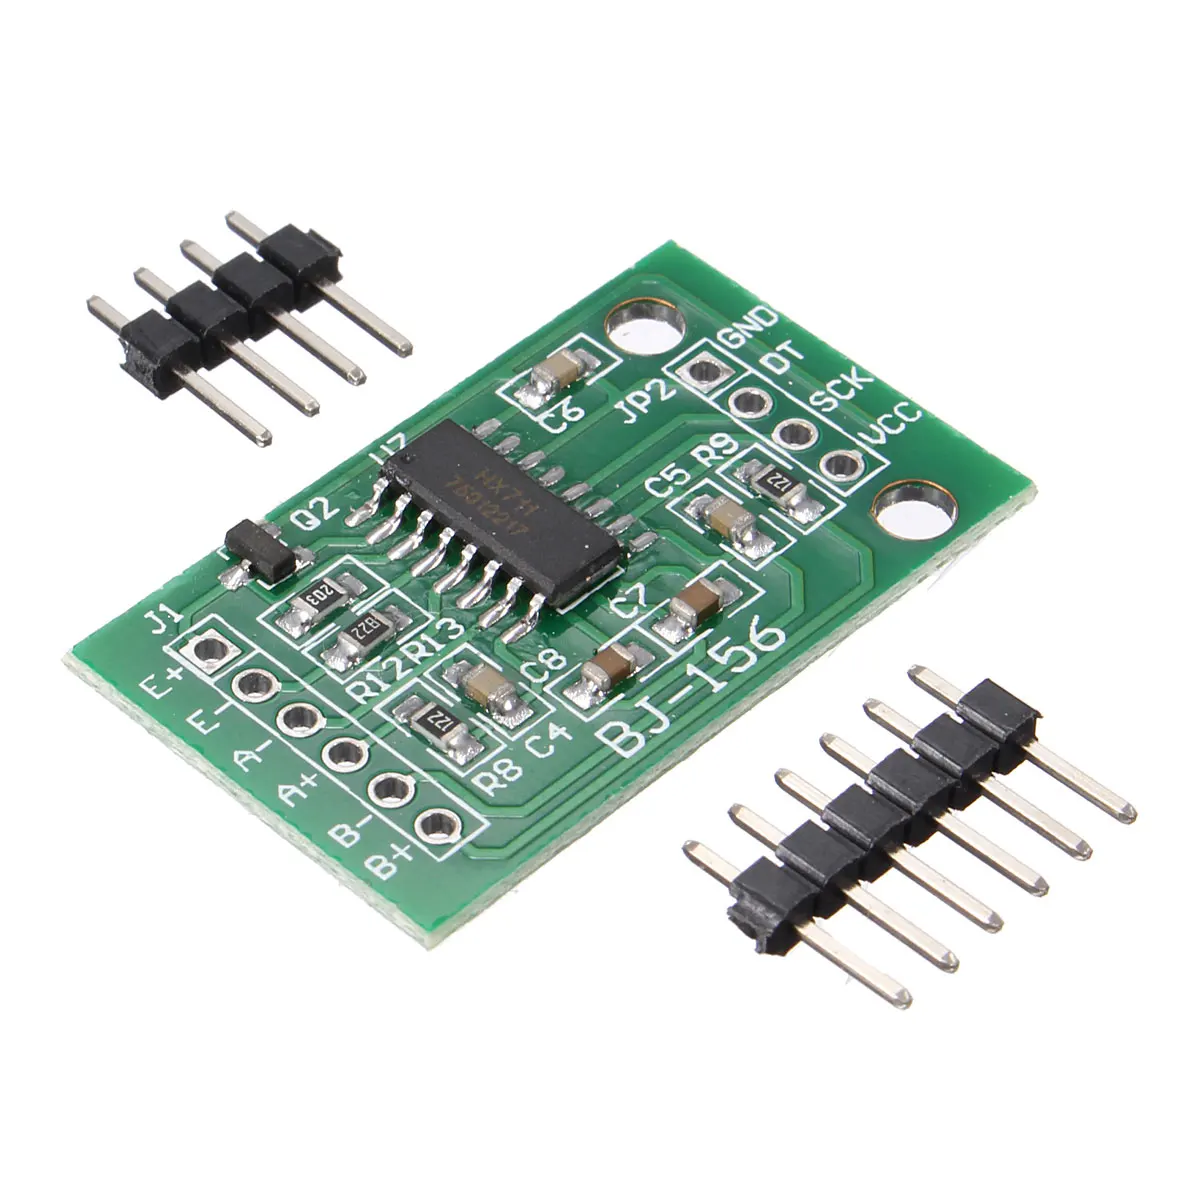 5 шт. двухканальный HX711 датчик нагрузки Модуль взвешивания Датчик давления s 24 бит точность AD сенсор для Arduino DIY Электронный